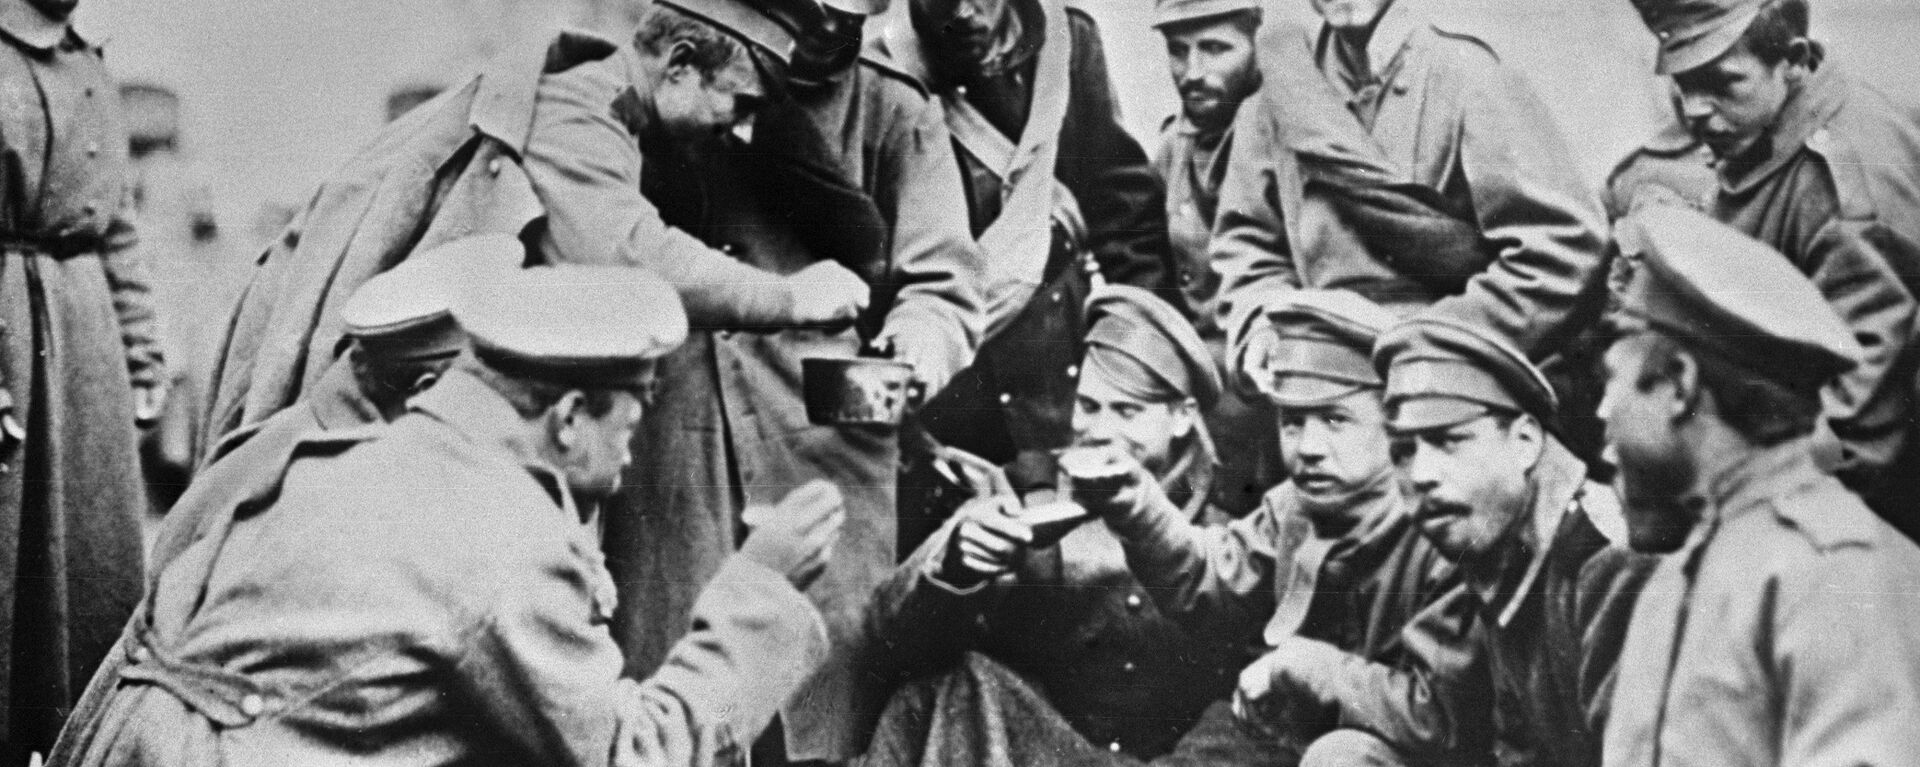 Руски војници сипају супу Аустријанцу на руско-немачком фронту - Sputnik Србија, 1920, 08.11.2018